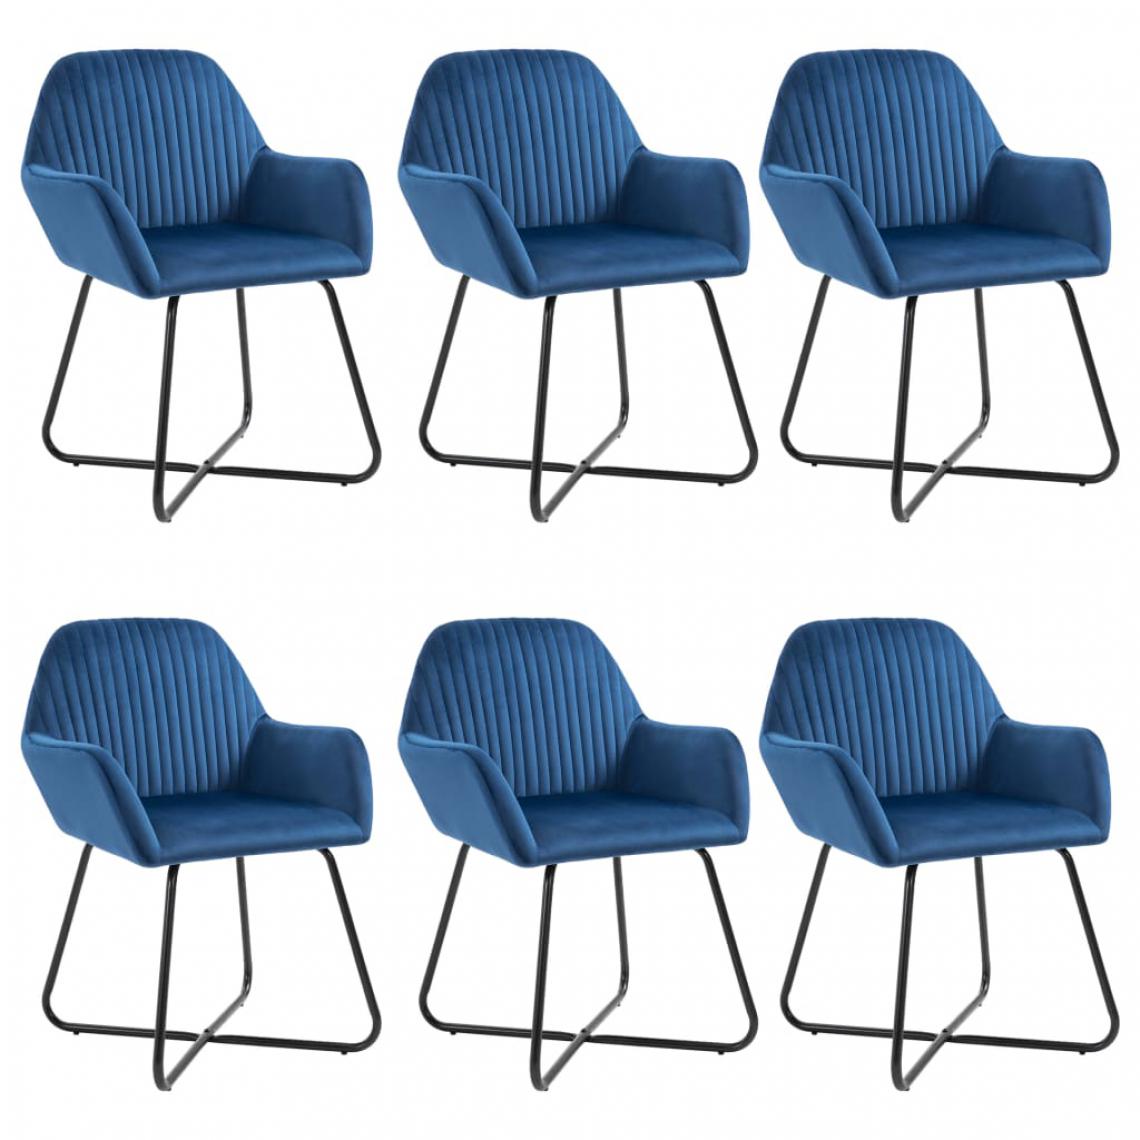 Chunhelife - Chaises de salle à manger 6 pcs Bleu velours - Chaises